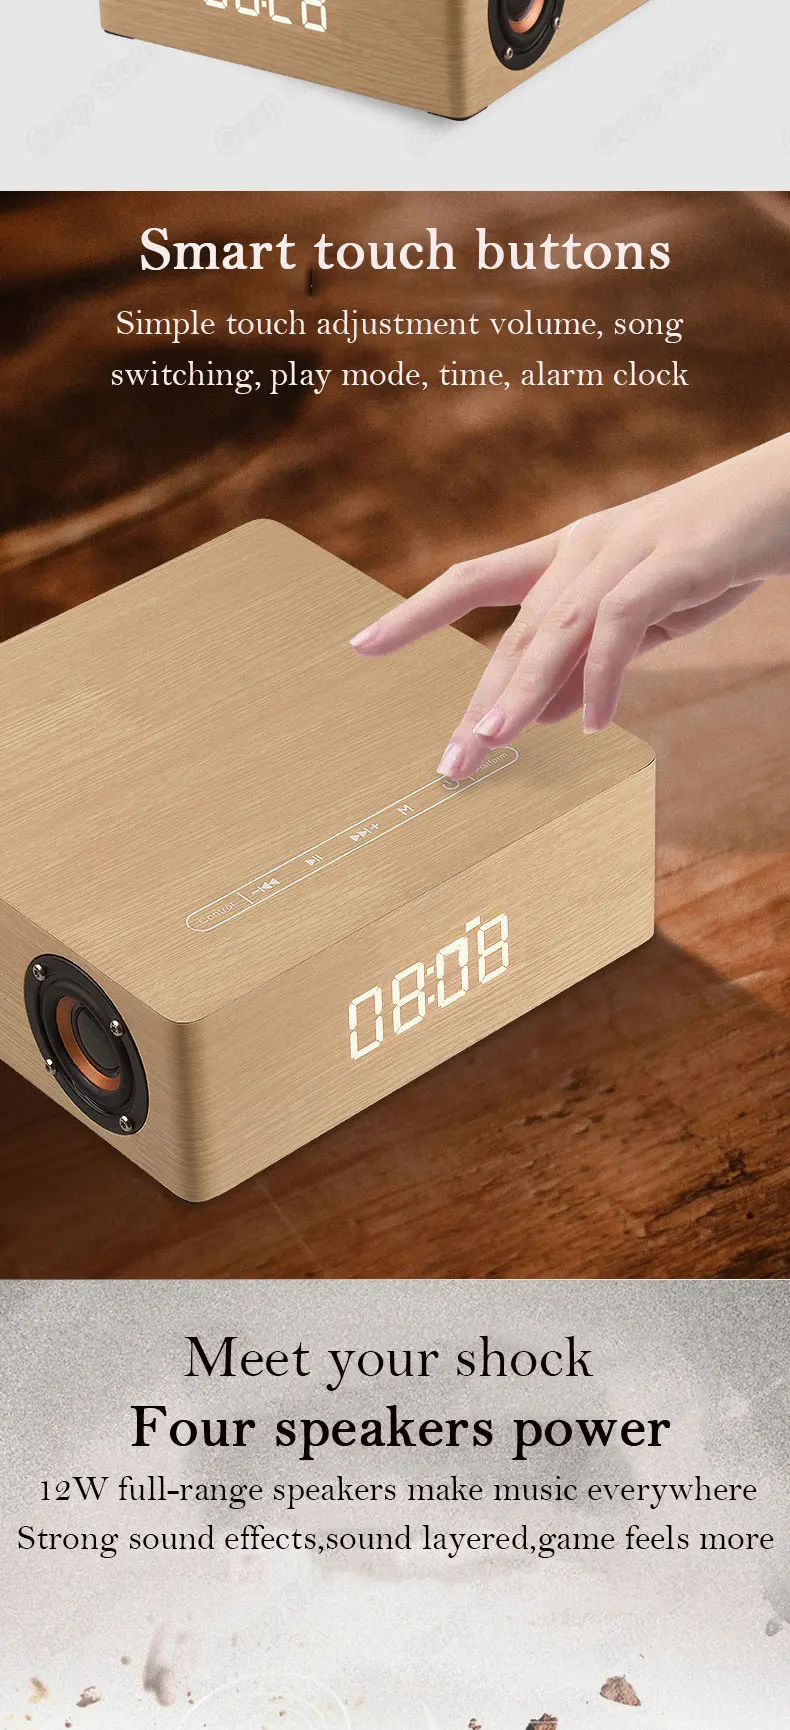 Touch часы деревянные портативный динамик Bluetooth четыре Рог Сабвуфер музыка bluetooth приемник аудио handfree вызова Беспроводной динамики